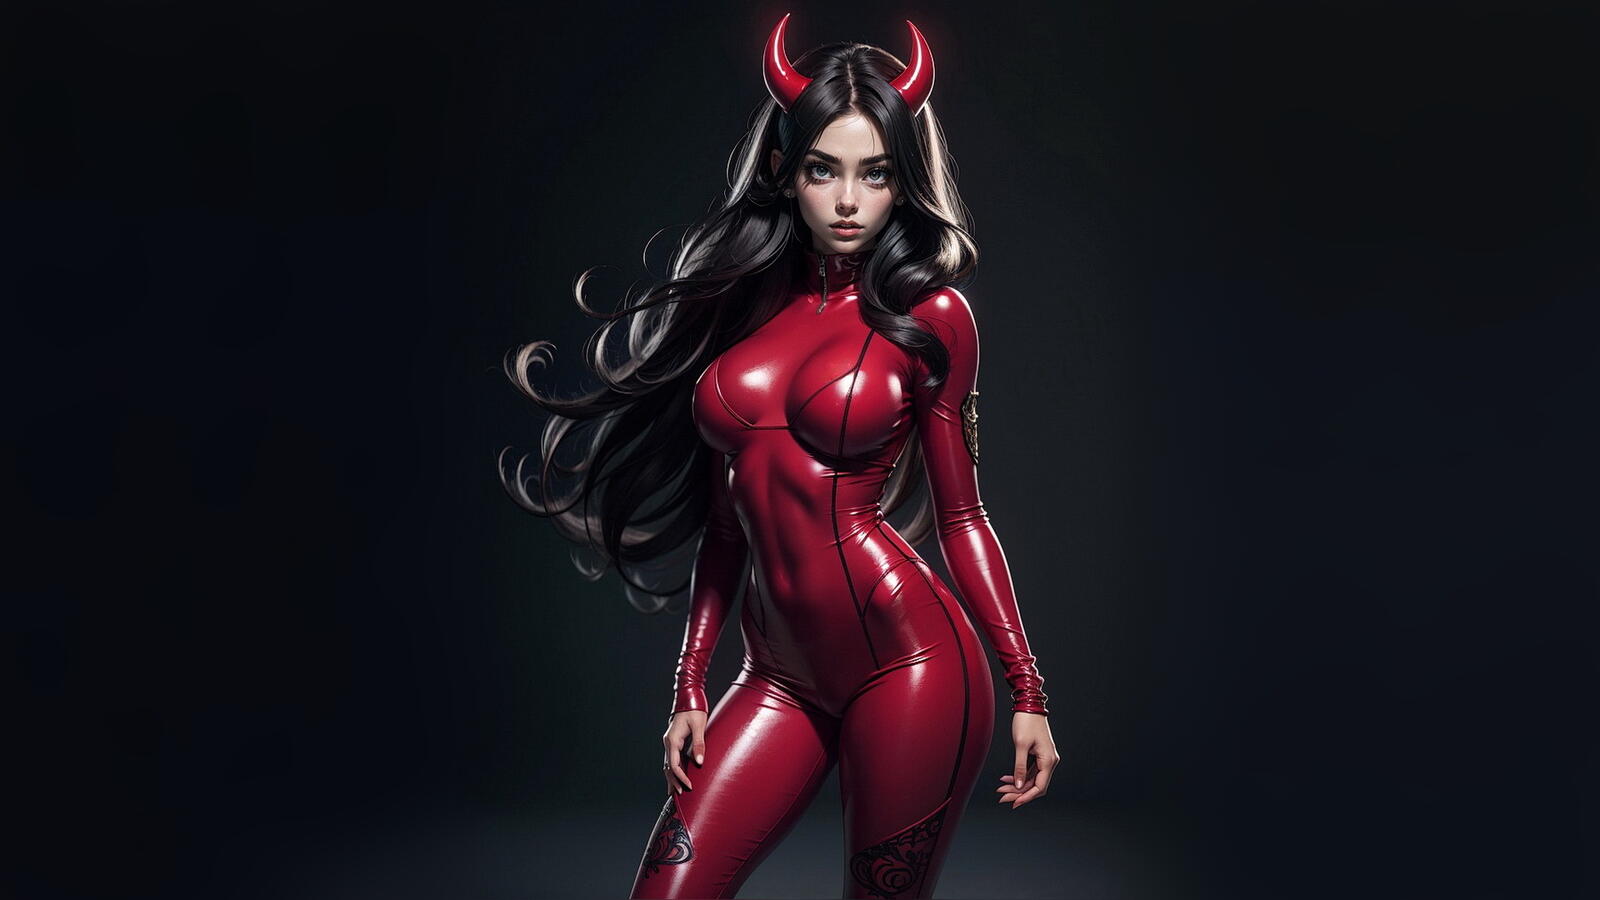 Бесплатное фото Девушка демон с черными волосами и красном костюме на темном фоне